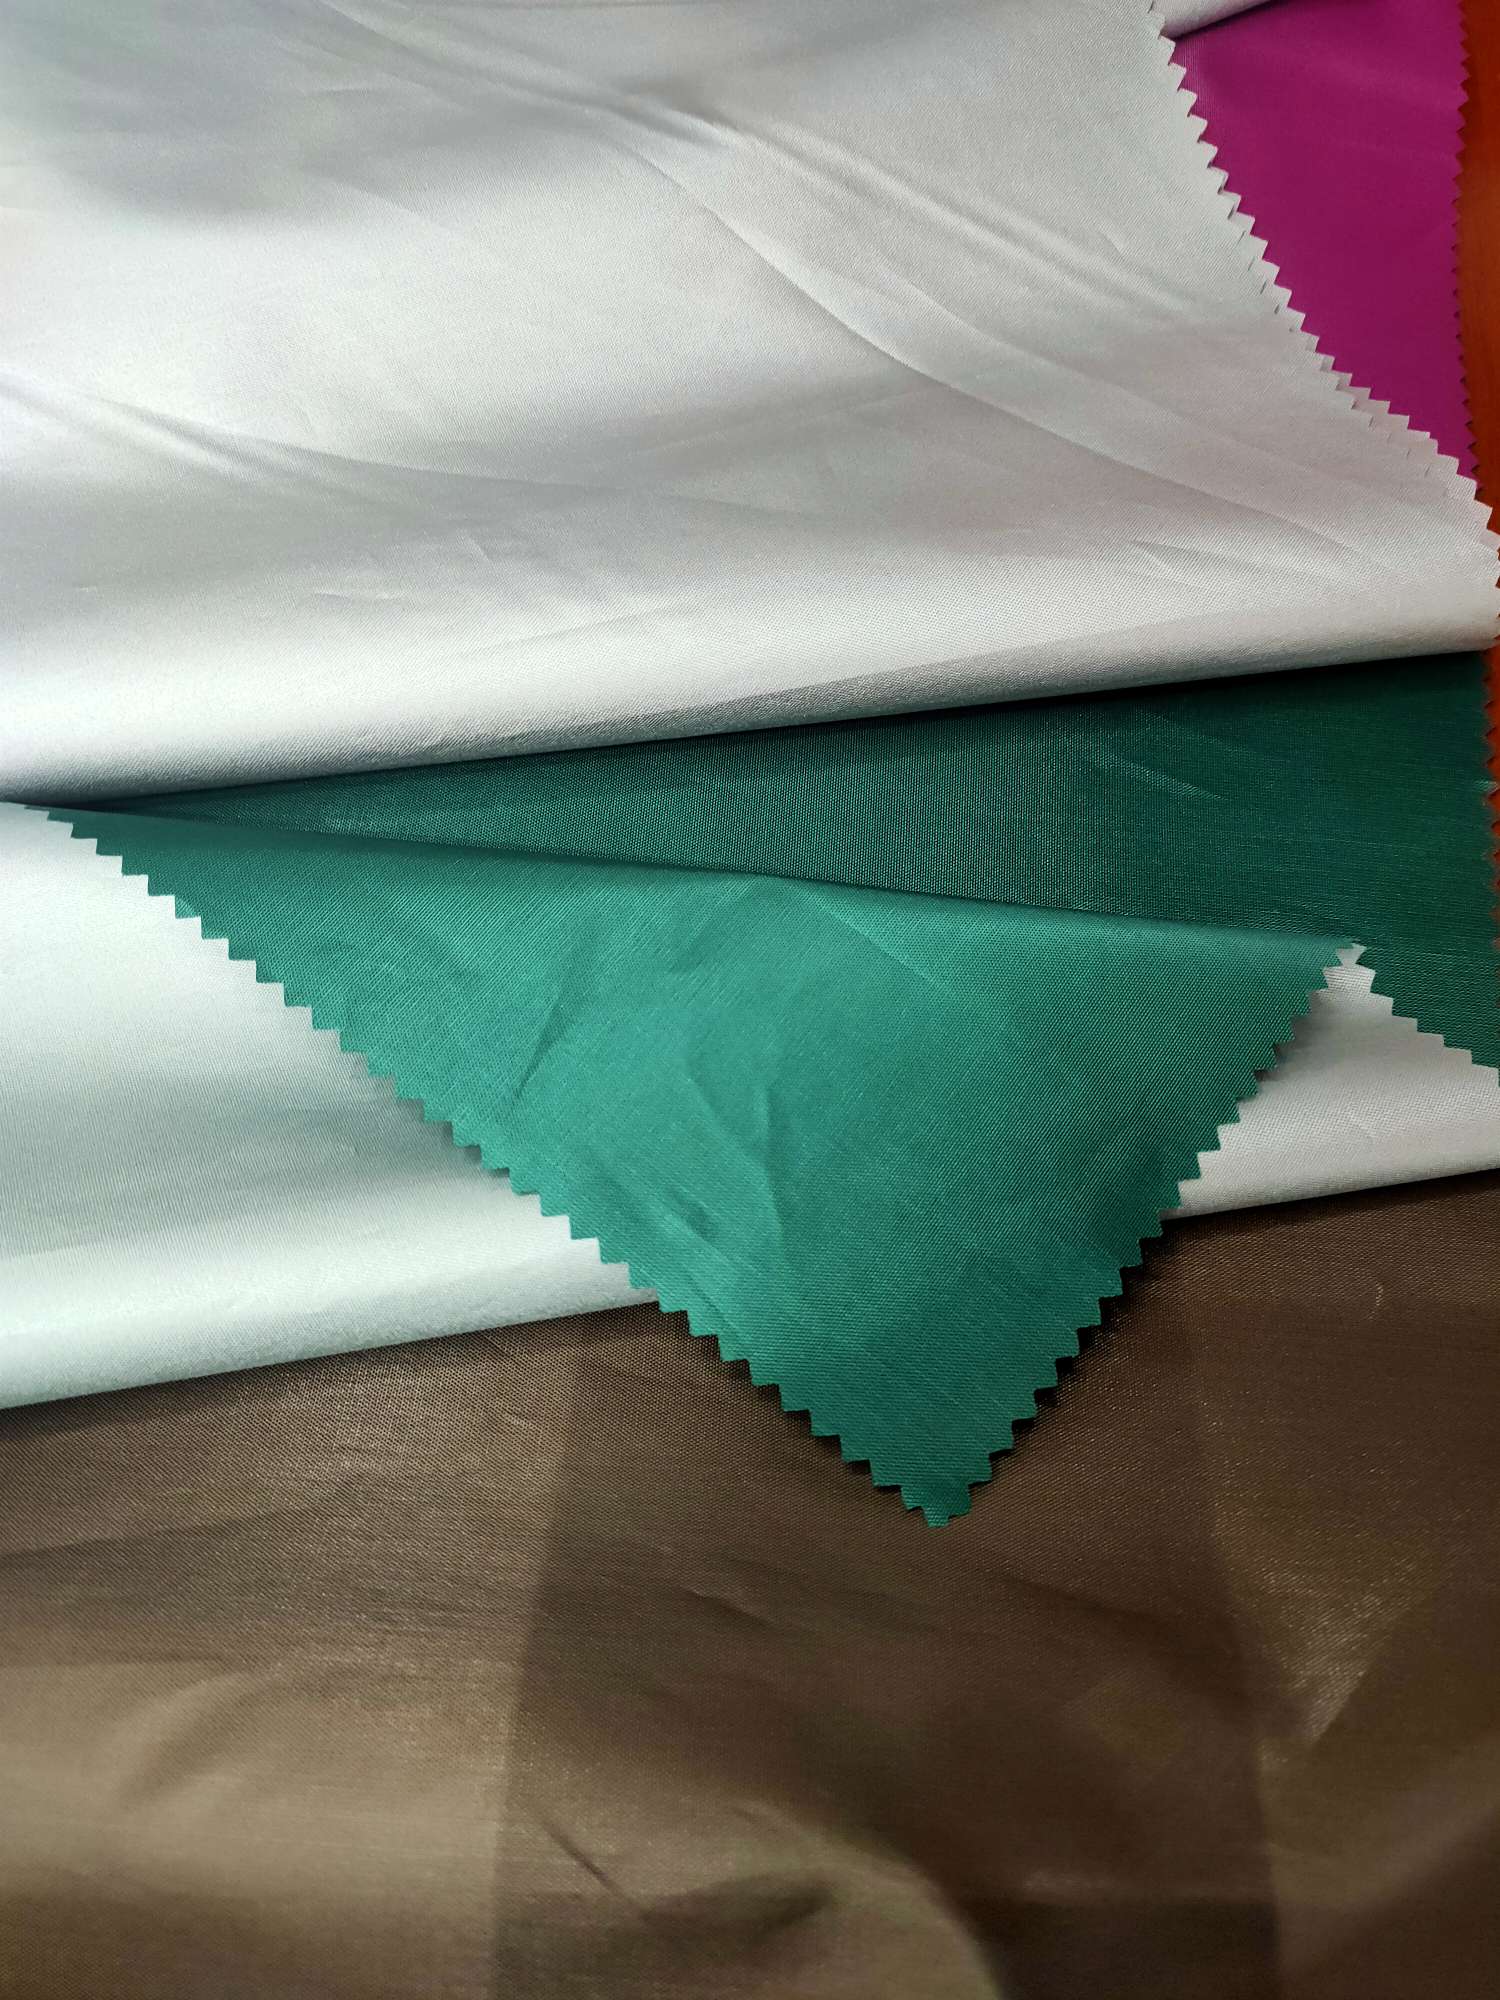 厂家直销190/210涂银面料 多种颜色可选 可用于束口袋雨伞服装箱包等多种用途